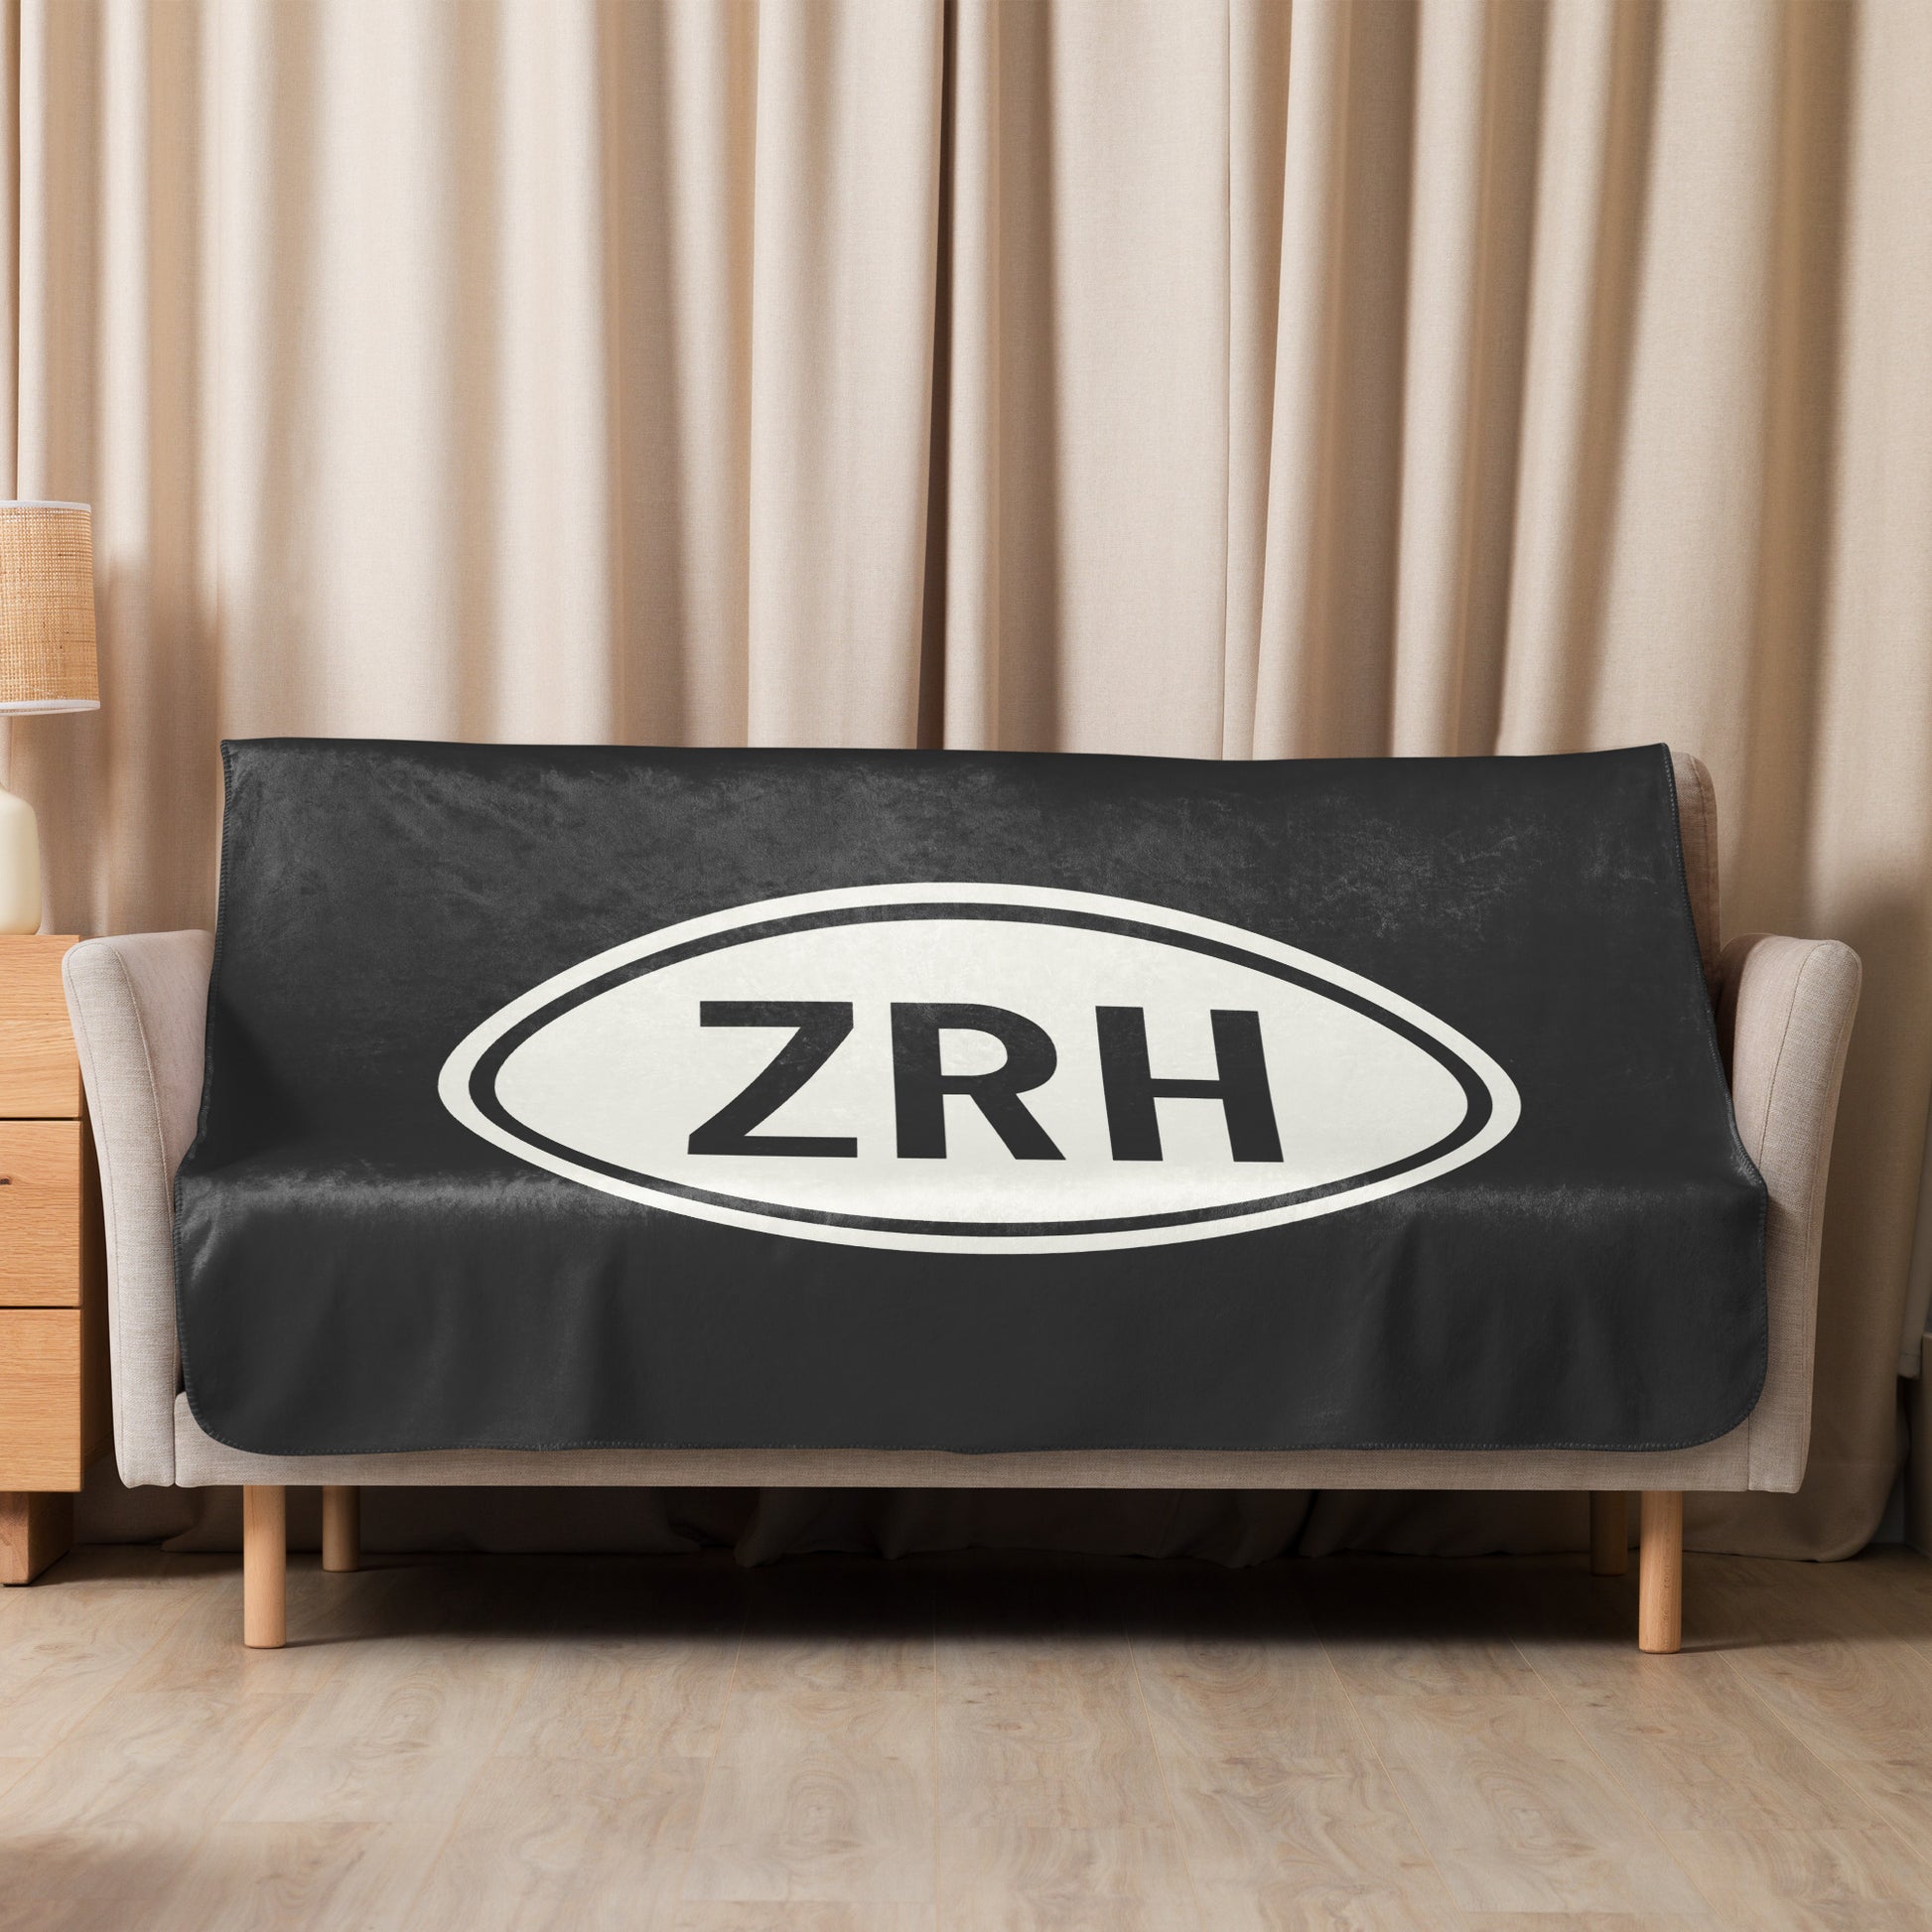 Unique Travel Gift Sherpa Blanket - White Oval • ZRH Zurich • YHM Designs - Image 07